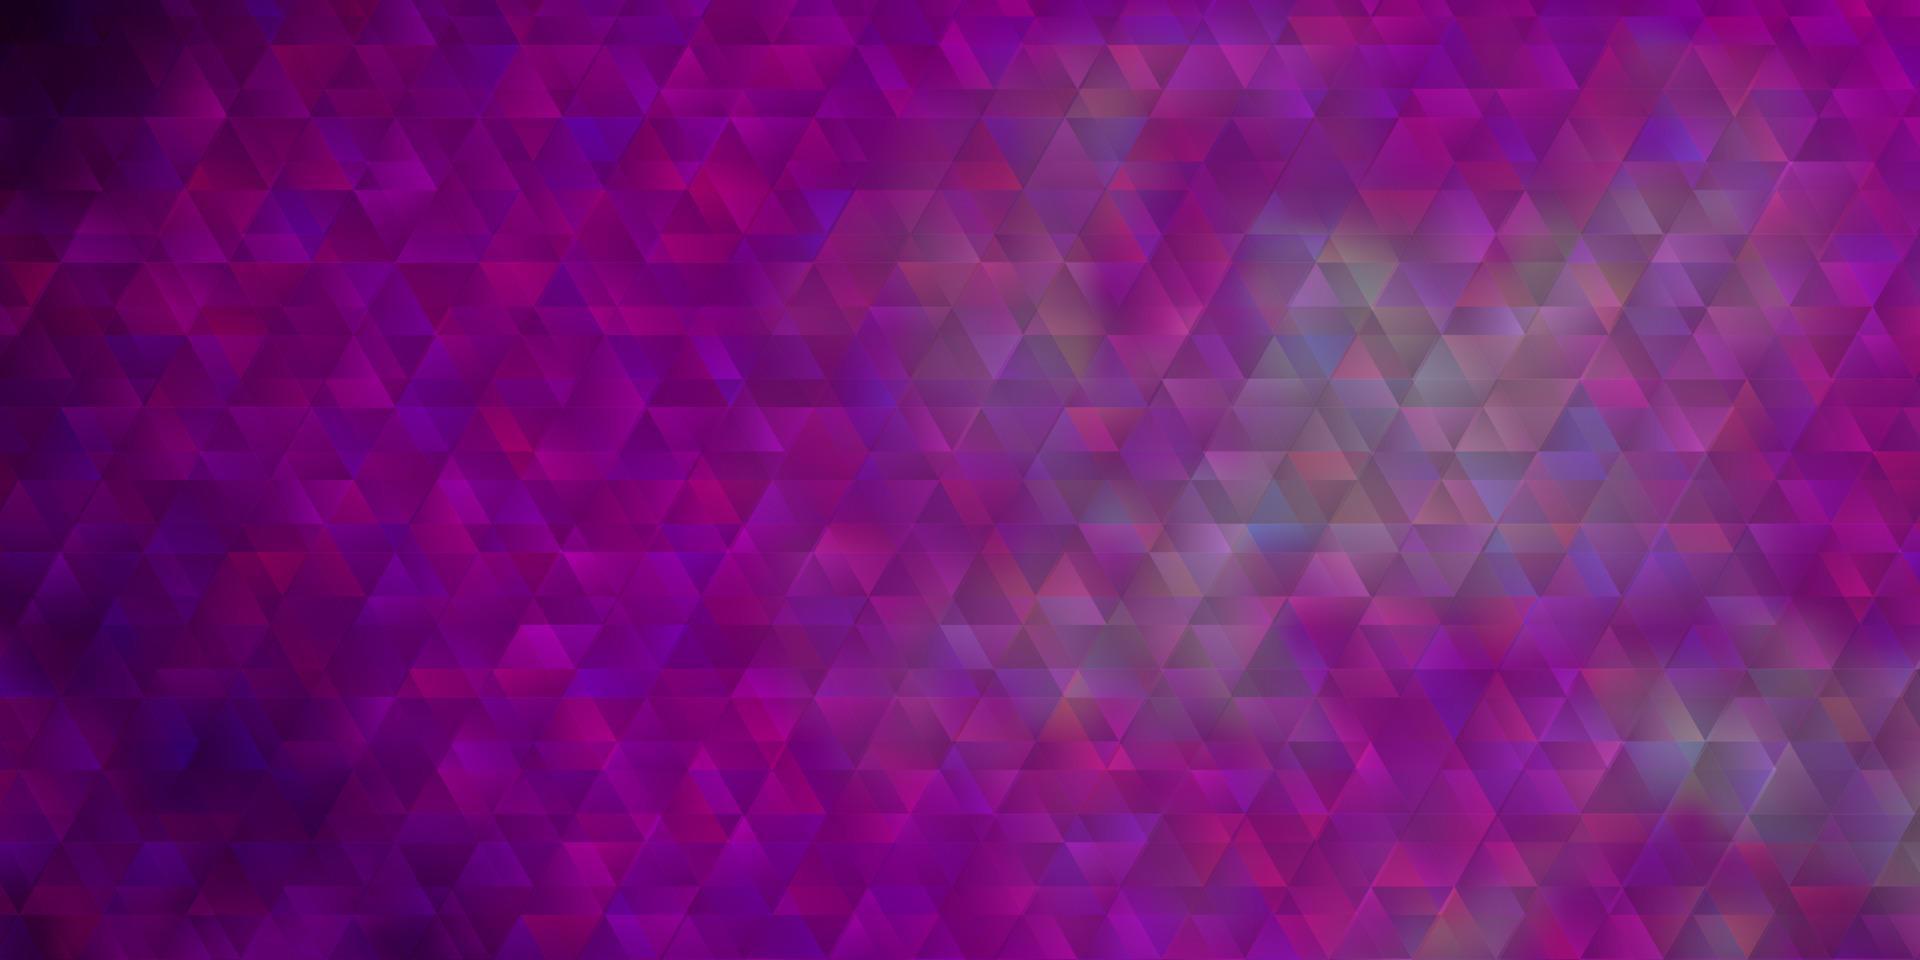 padrão de vetor rosa claro com linhas, triângulos.